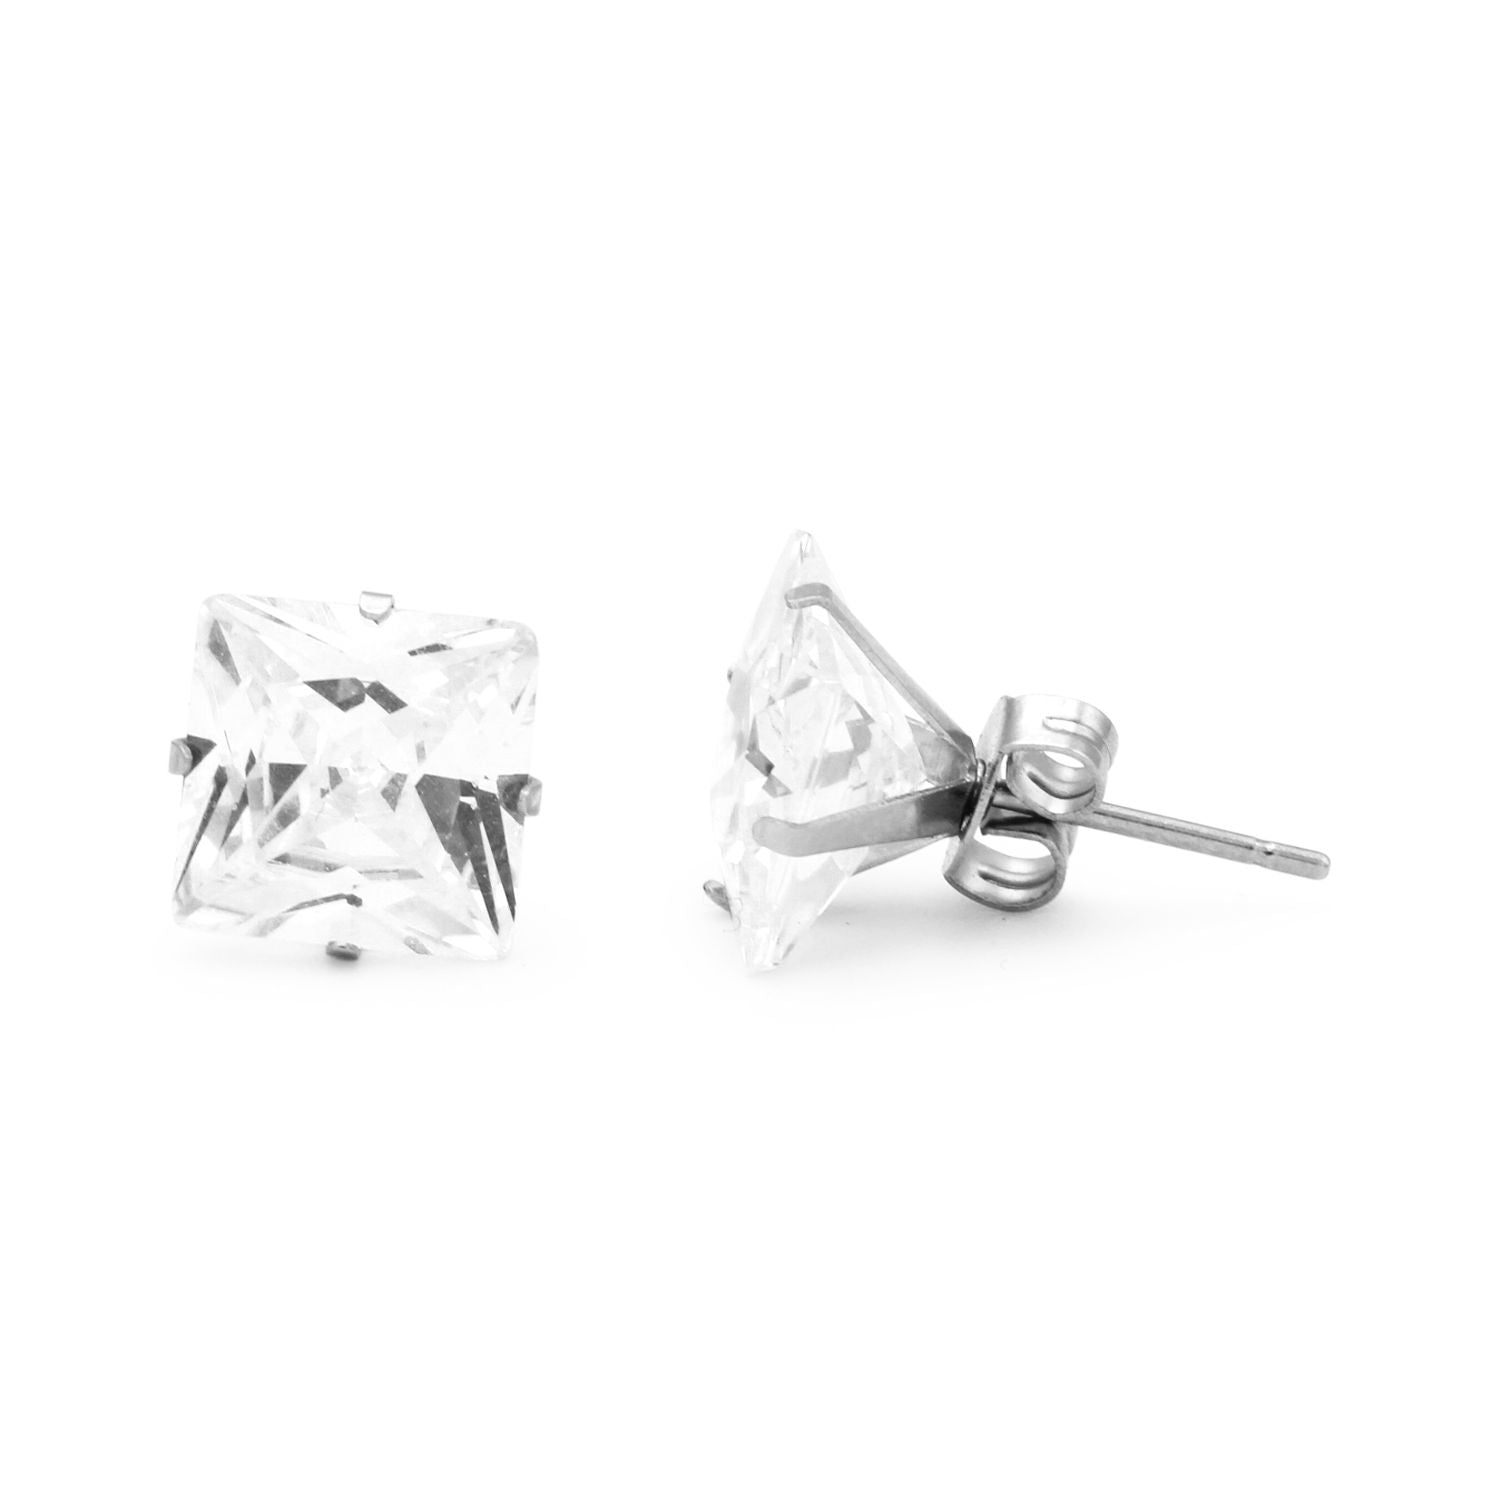 Cubic Zirconia Square Stud Earrings Stainless Steel Silver Jewelry Men Women